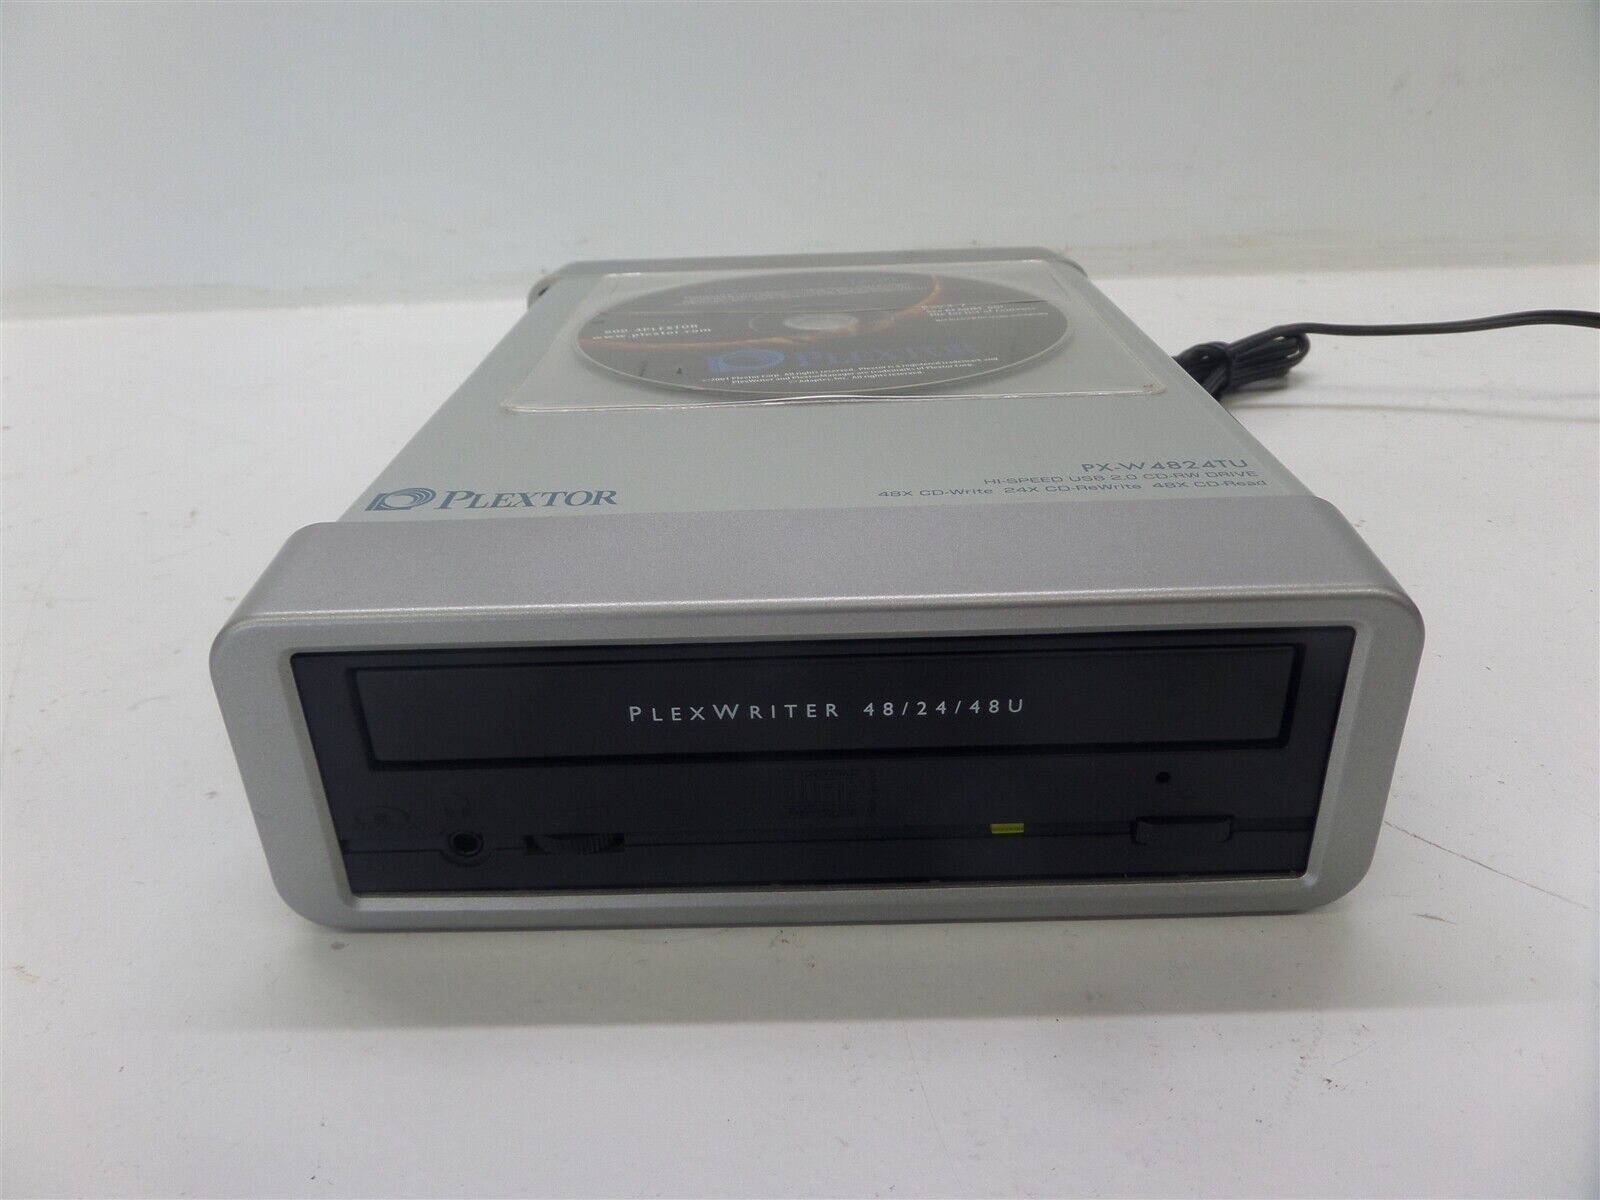 Plextor Plexwriter 48/24/28U Hi-Speed USB 2.0 CD-RW External Drive PX-W4824TU 